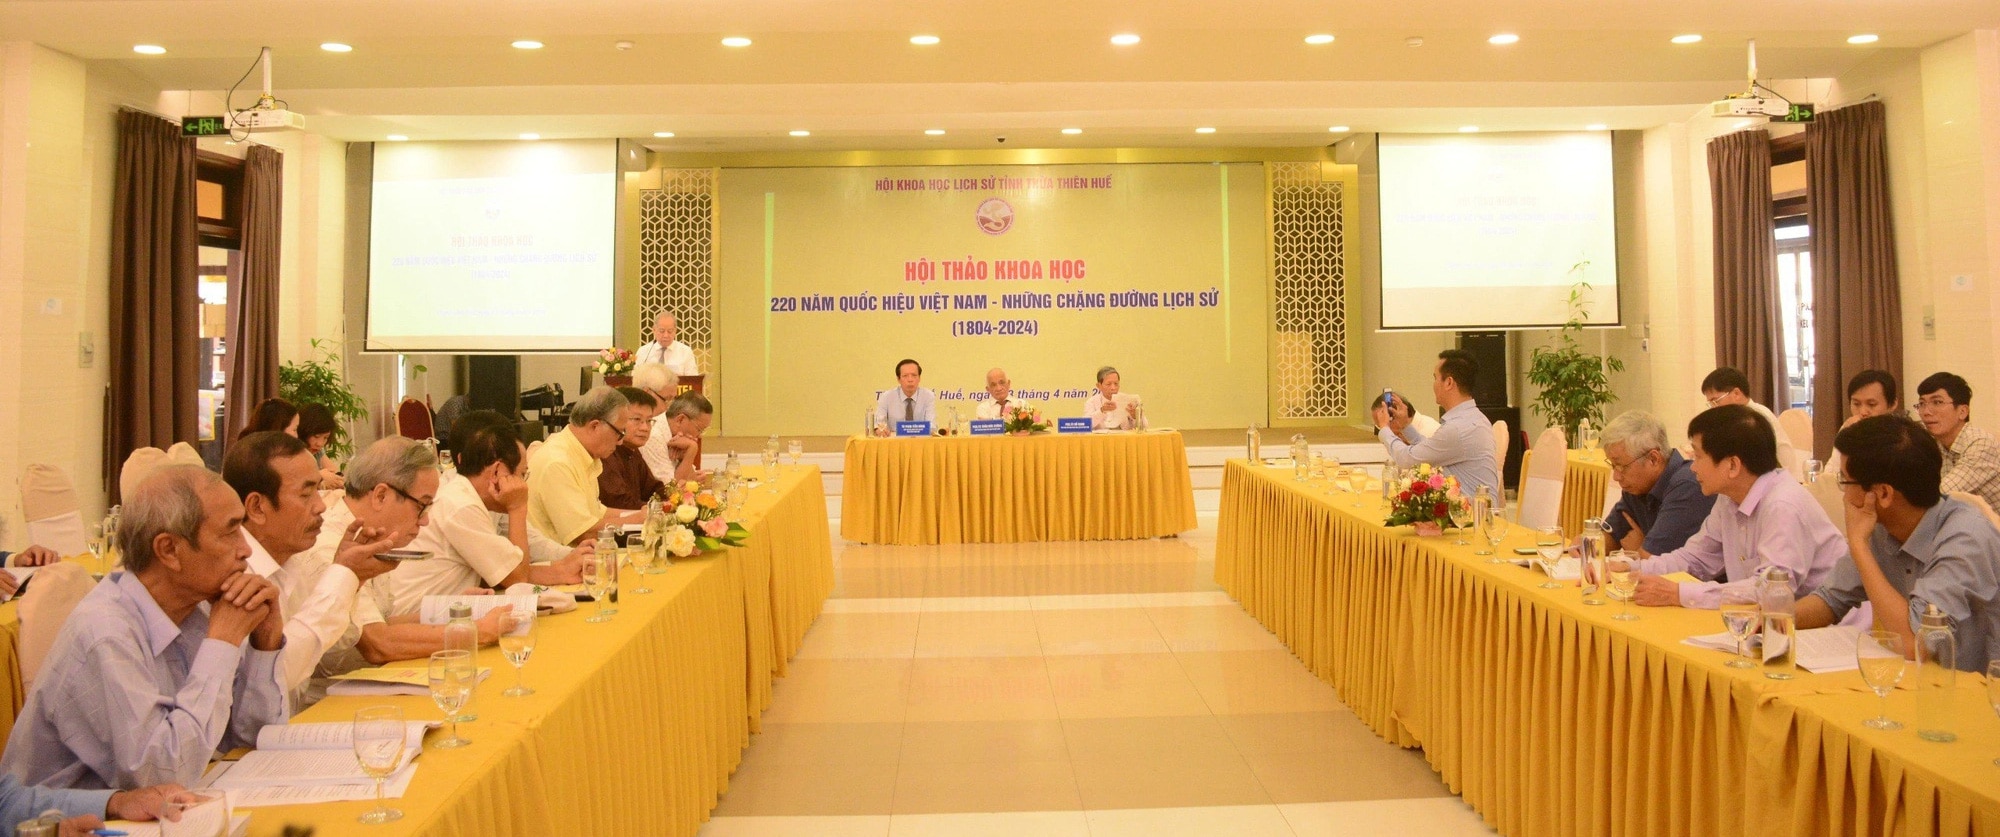 Các nhà nghiên cứu lịch sử tham gia thảo luận tại hội thảo "220 năm quốc hiệu Việt Nam - những chặng đường lịch sử" diễn ra vào sáng 23-4 tại TP Huế - Ảnh: ANH TUẤN